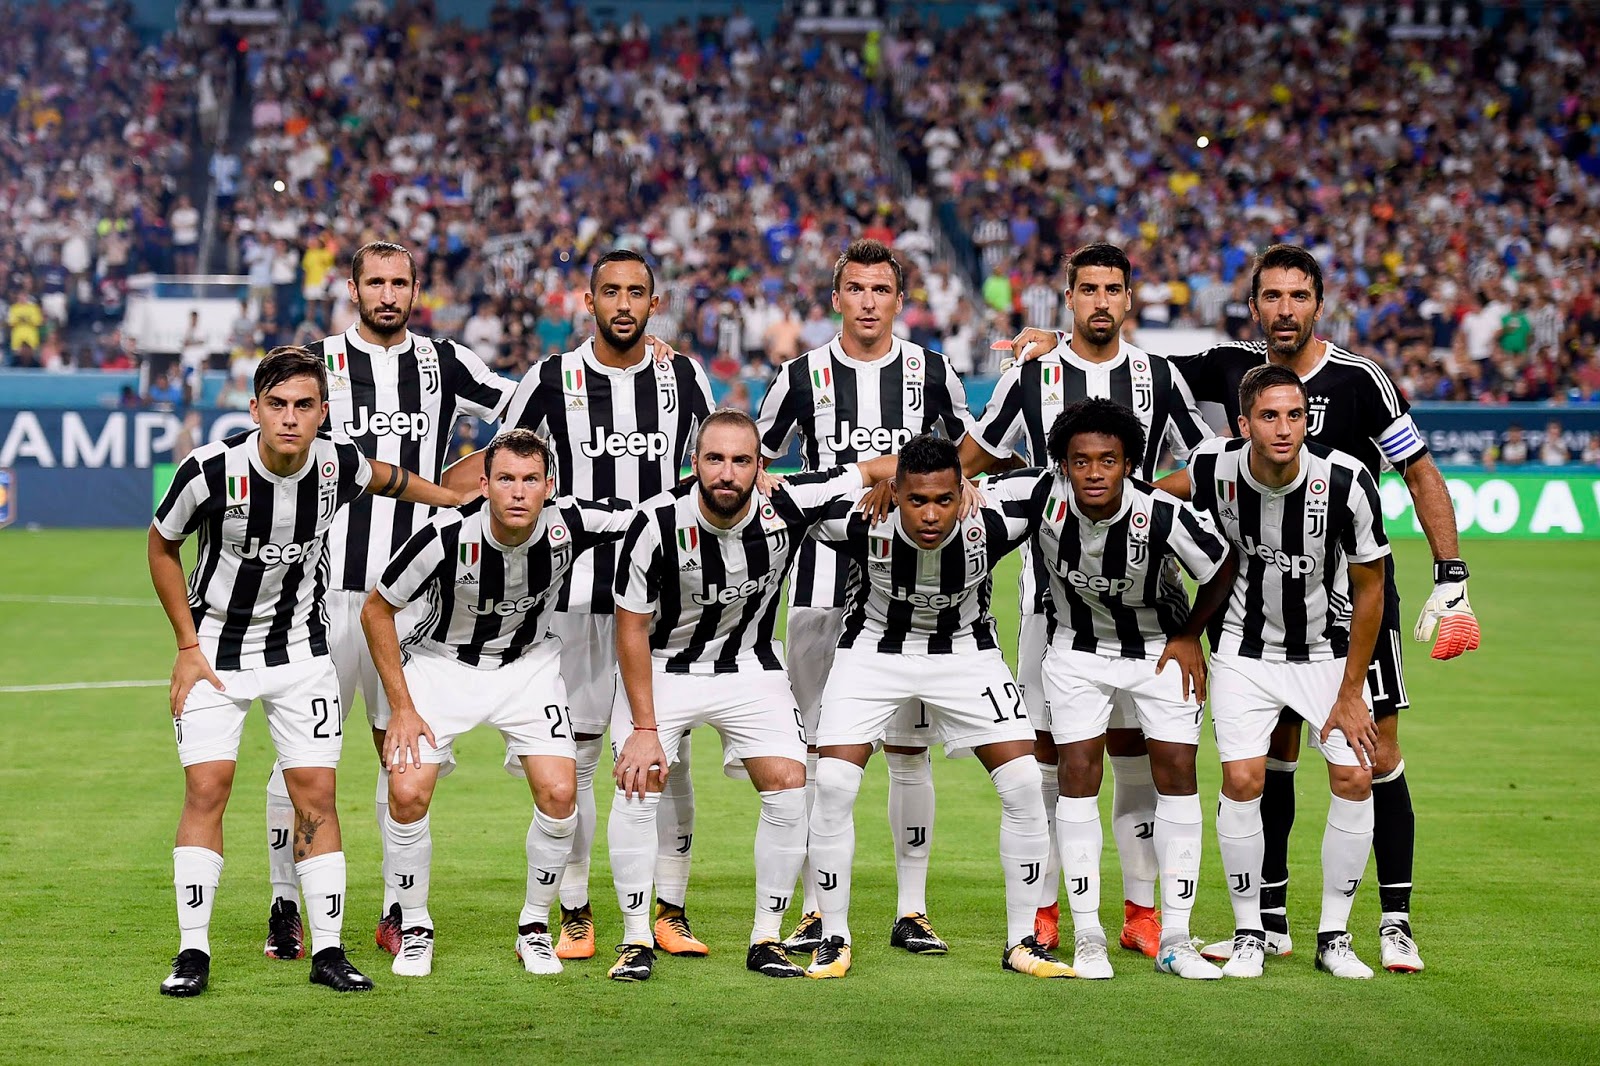 Daftar Skuad Pemain Juventus 2018 2019 Terbaru InfoAkuratcom